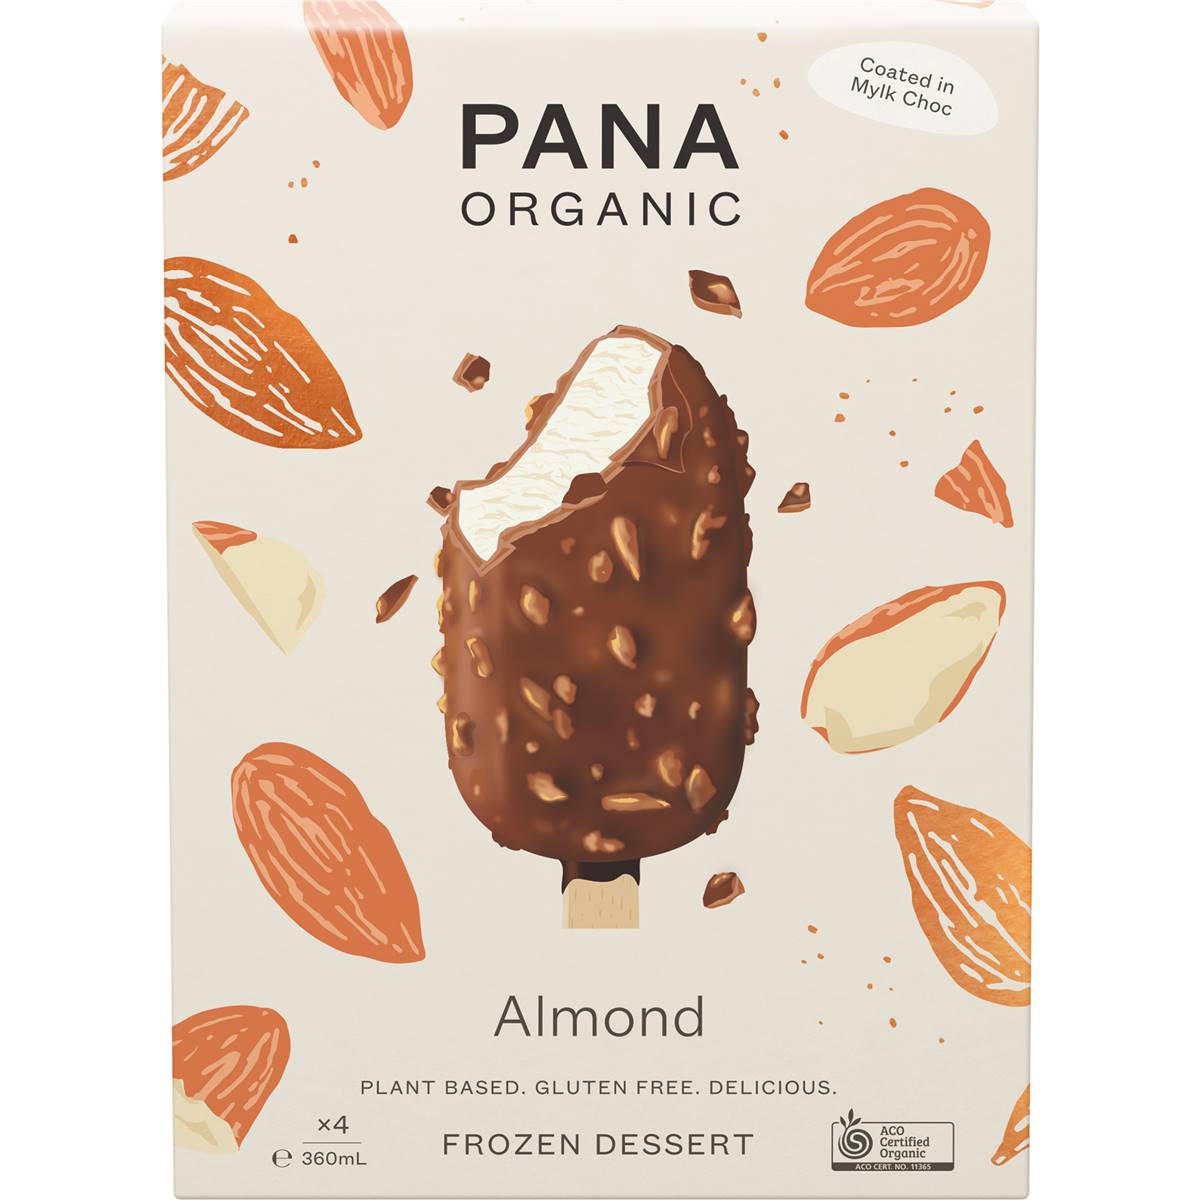 Calories in Pana Organic Almond Frozen Dessert Sticks